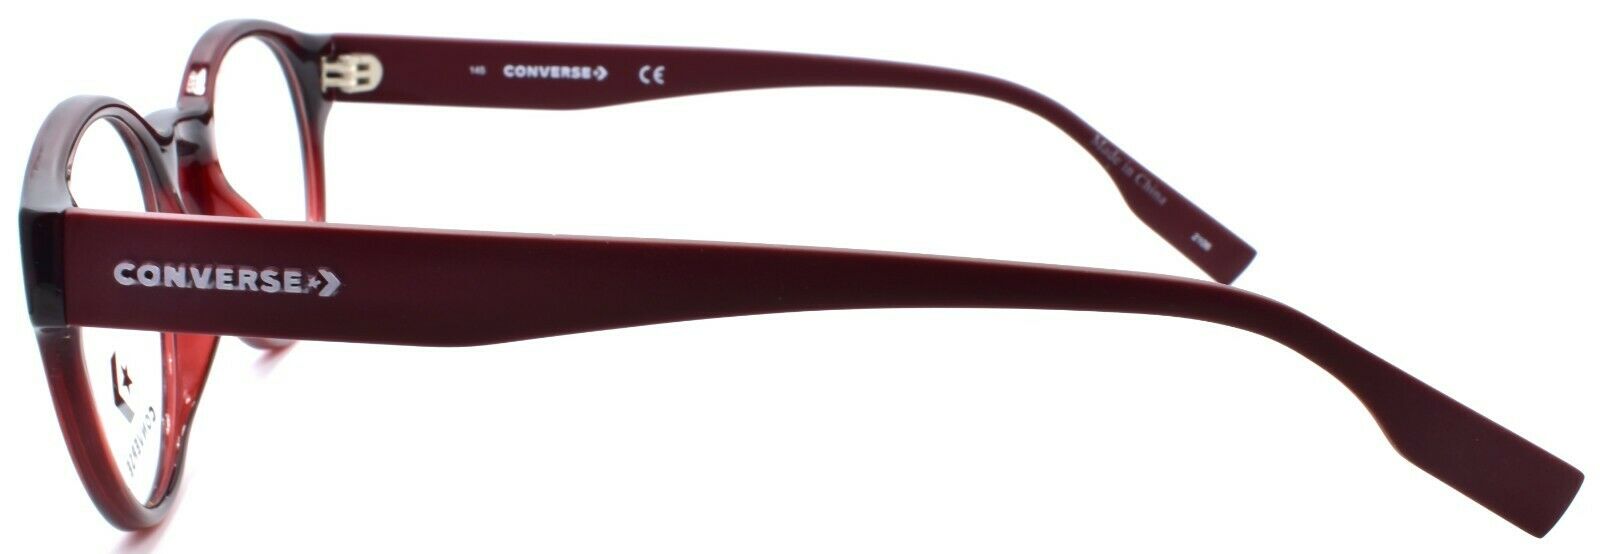 3-CONVERSE CV5018 610 Men's Eyeglasses Frames Round 49-20-145 Crystal Team Red-886895508551-IKSpecs